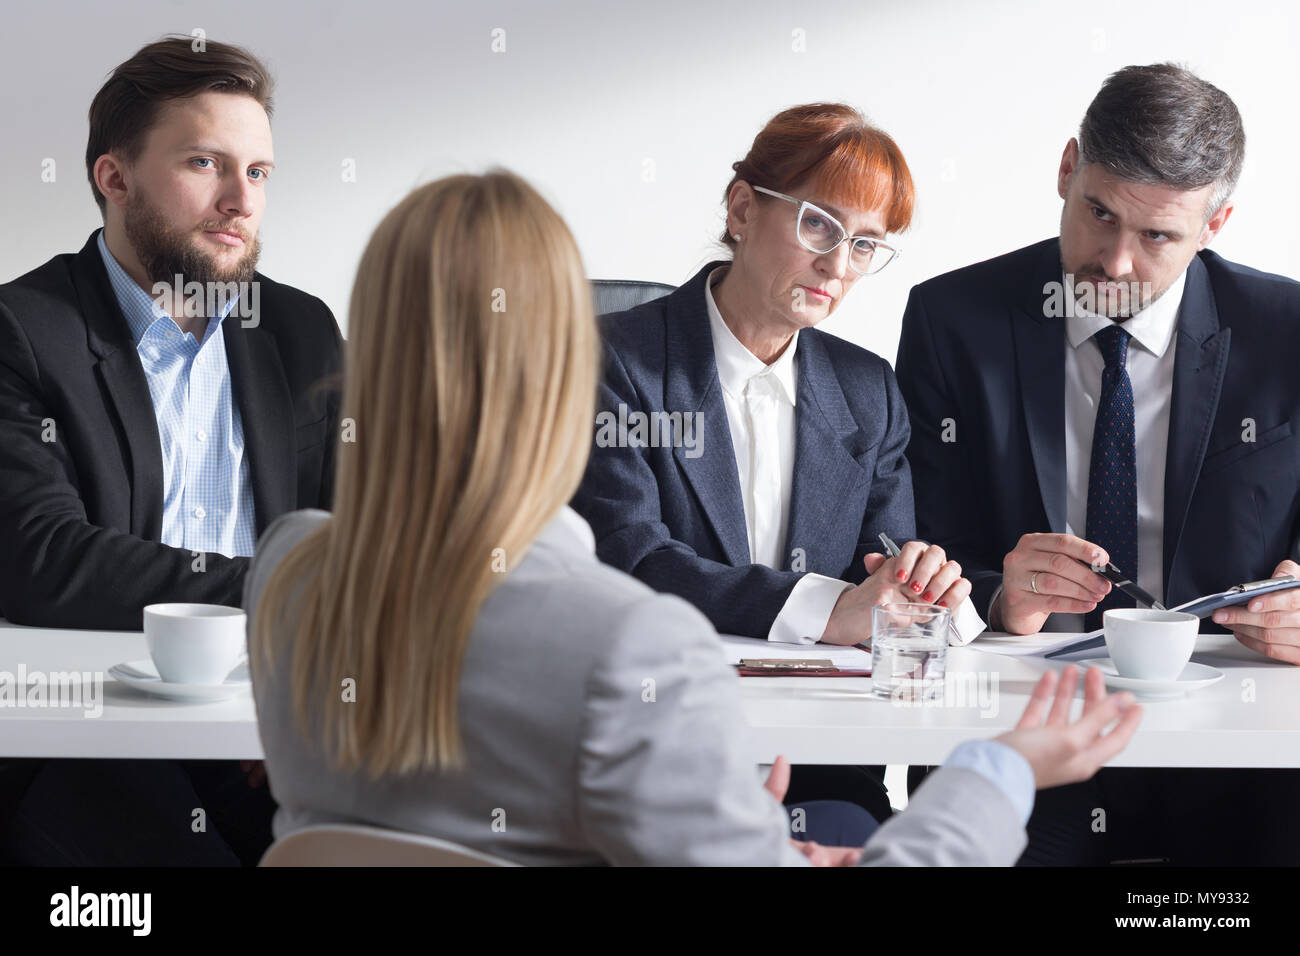 Femme vue de dos pendant l'entrevue et trois travailleurs de l'entreprise Banque D'Images